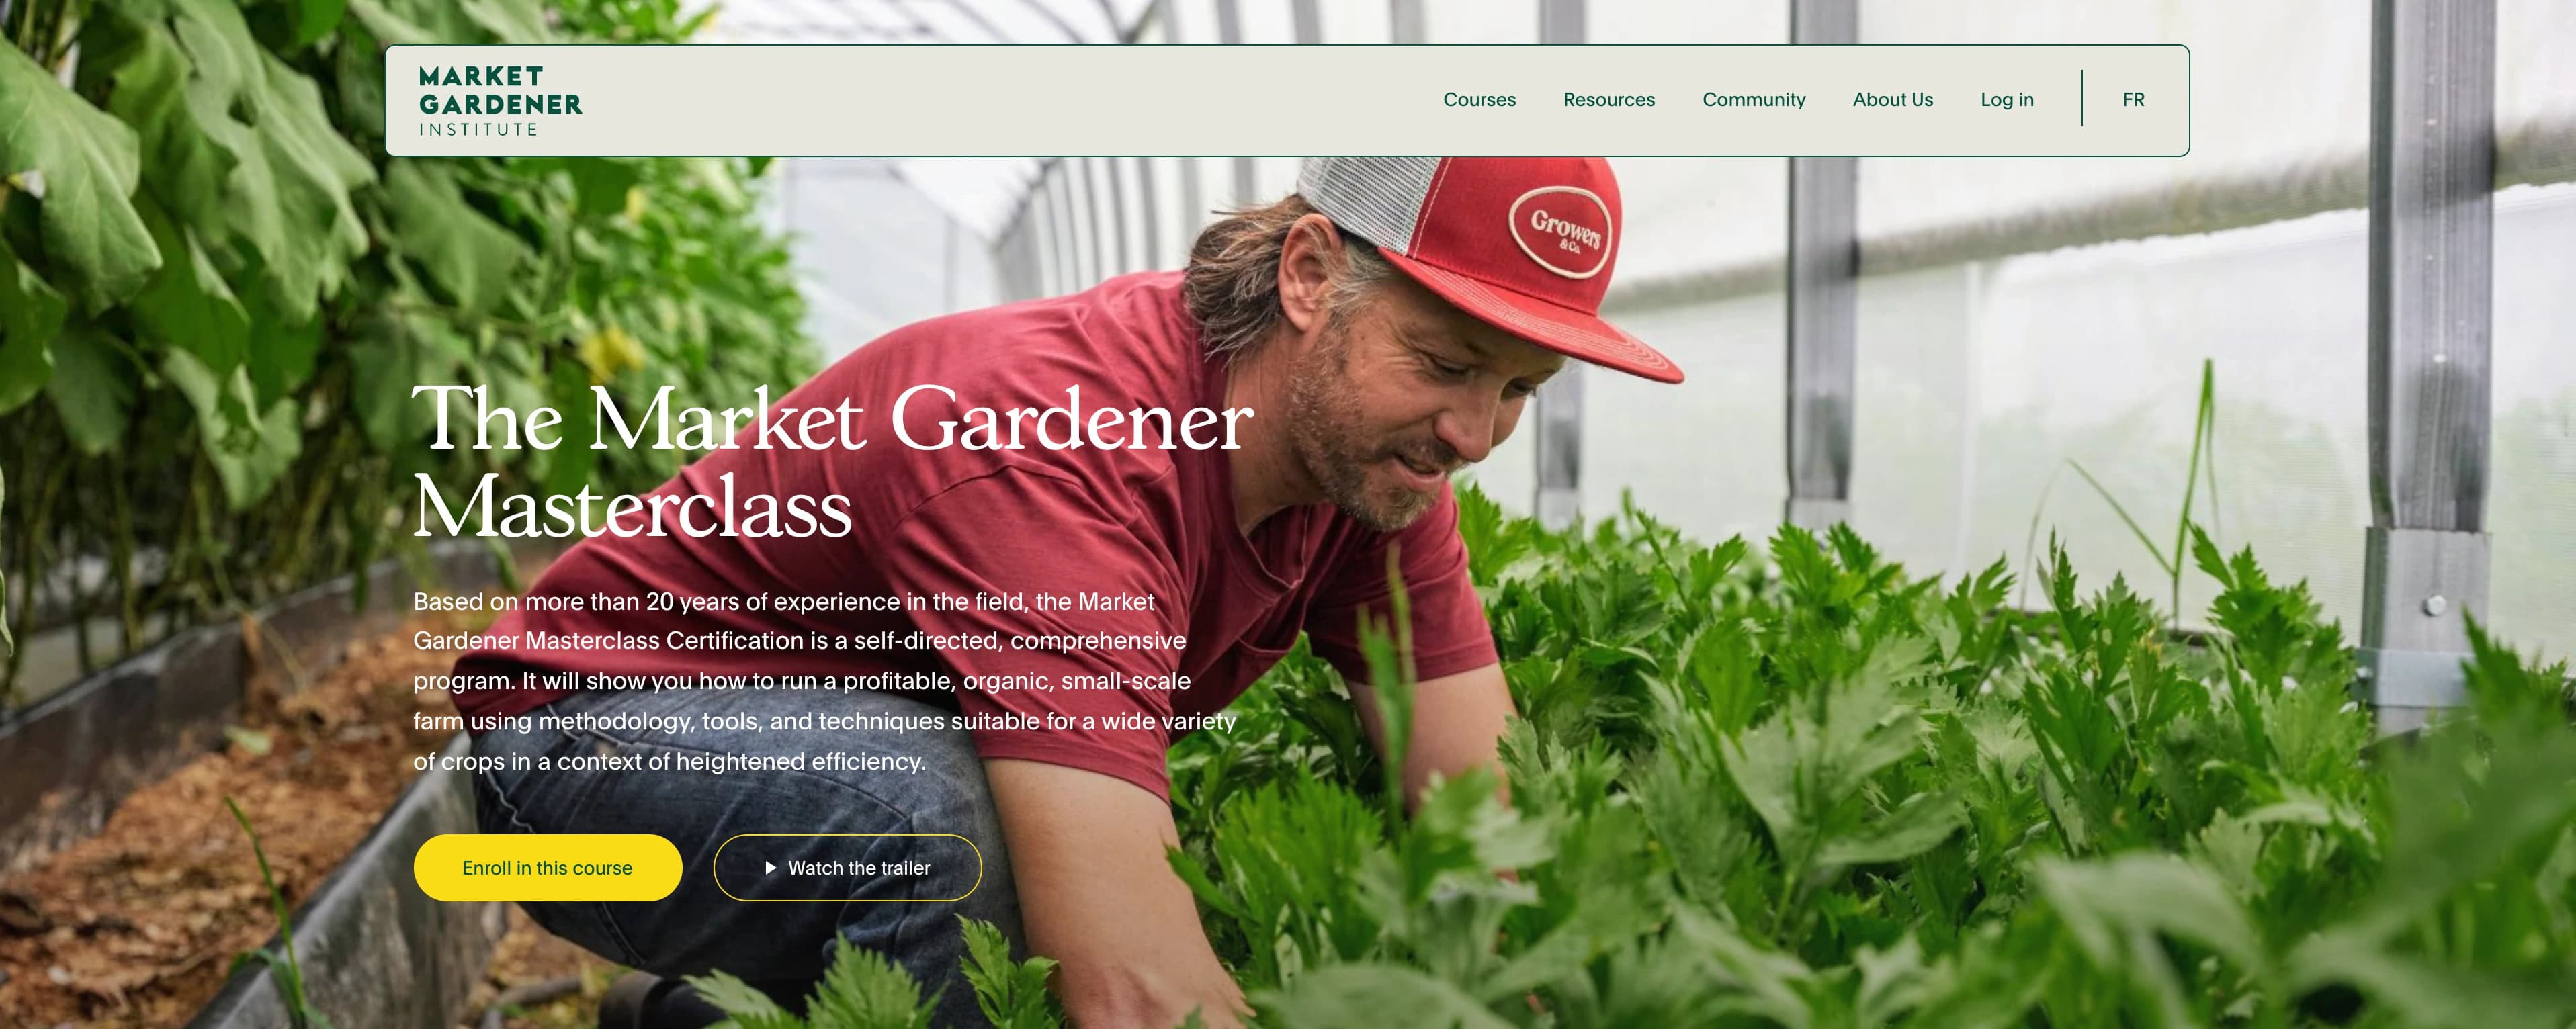 The Market Gardener - Corsi online esempio